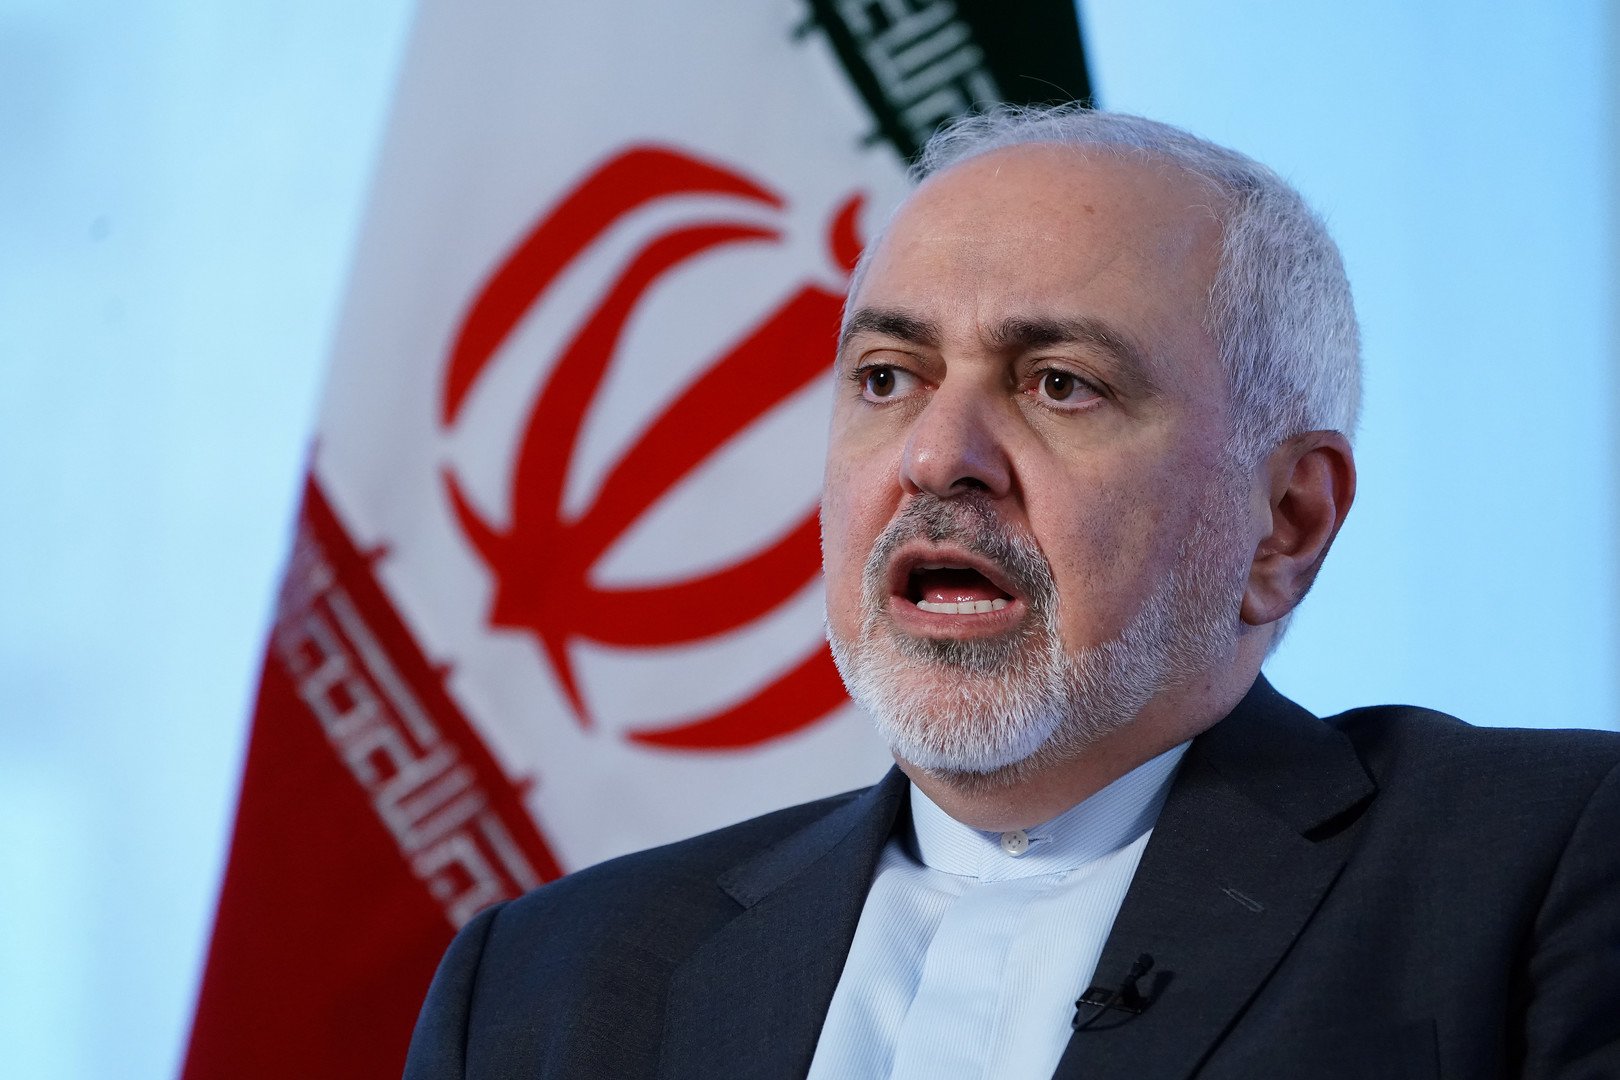 ظريف: الحرب الإيرانية الأمريكية ليست وشيكة لكن حوادث خطيرة قد تؤدي إلى اشتباك عسكري بين البلدين